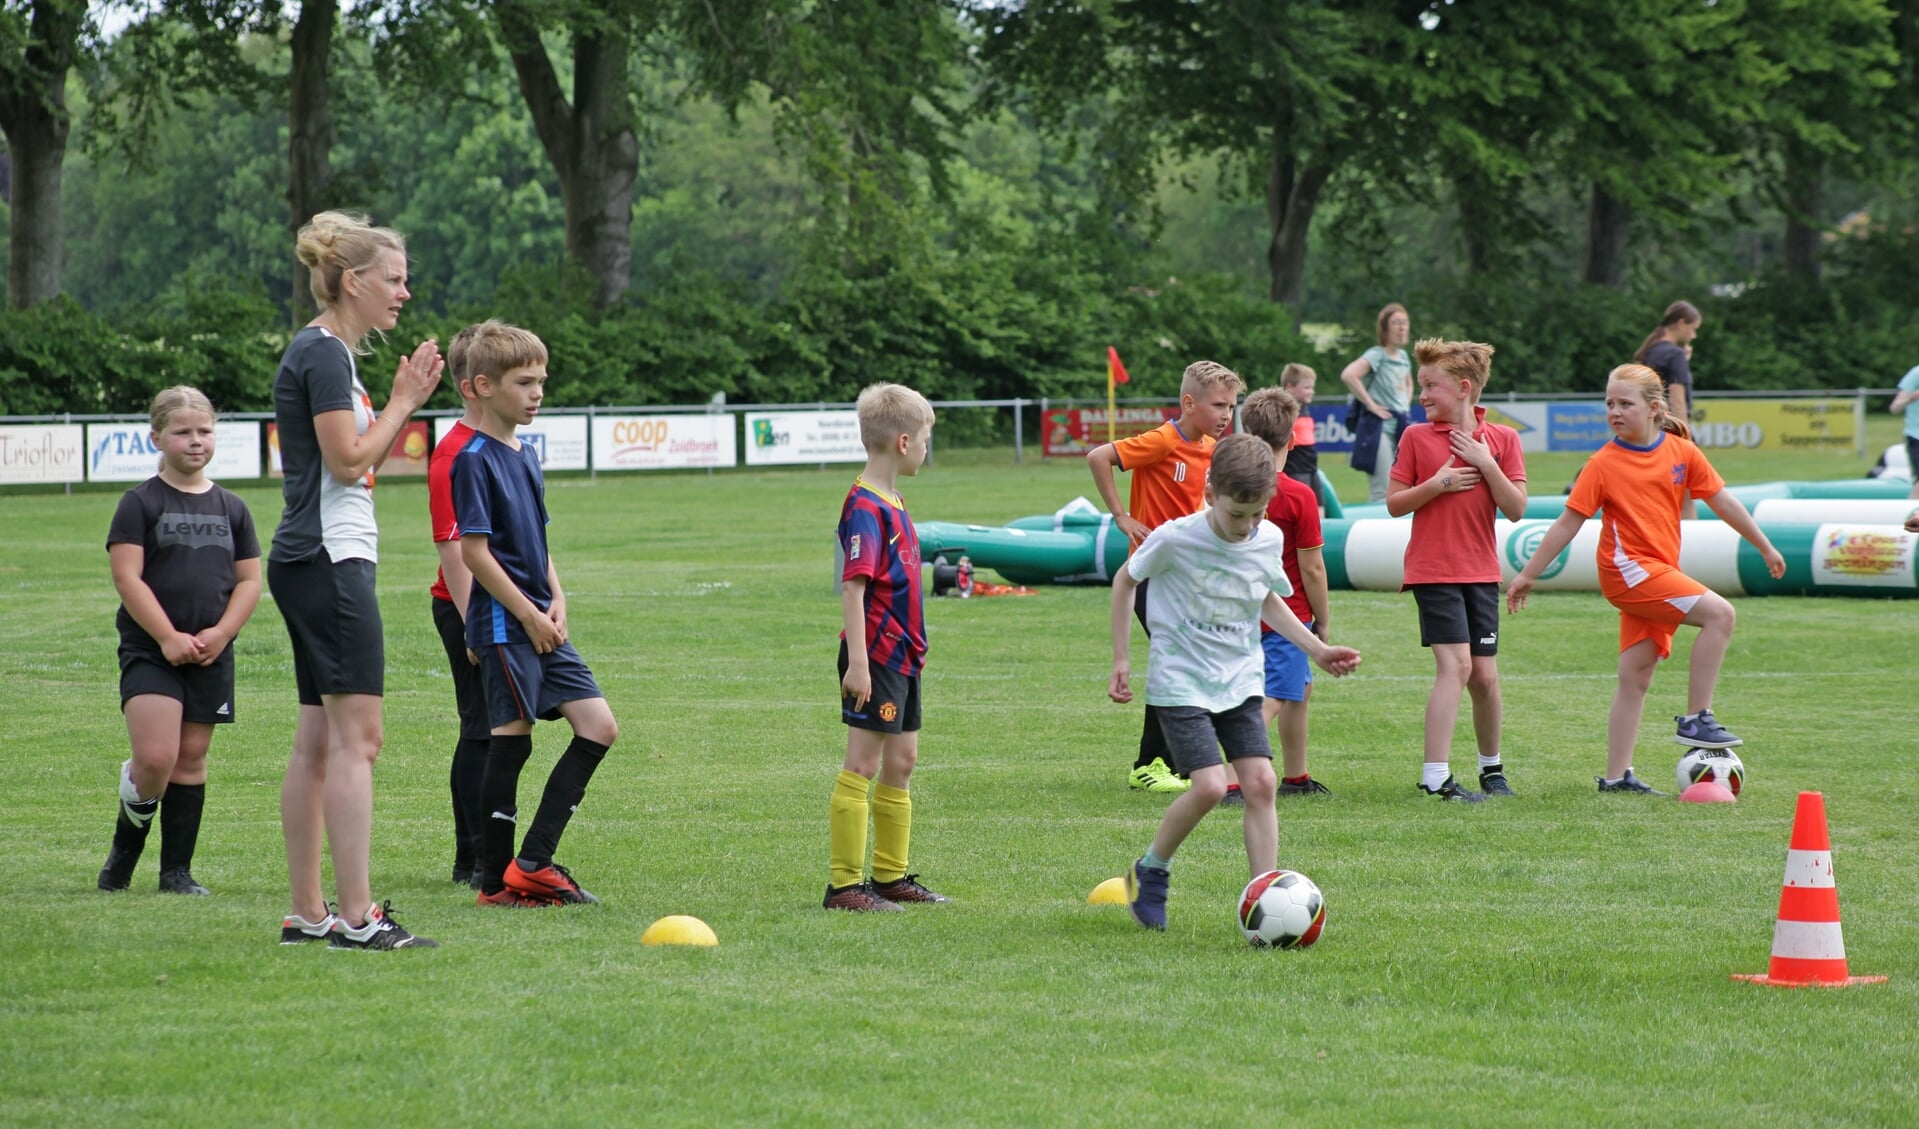 De jeugd kon zaterdag meedoen aan een circuit met allerlei voetbalactiviteiten, zoals een dribbeloefening. Foto: Bert Woltjes.  